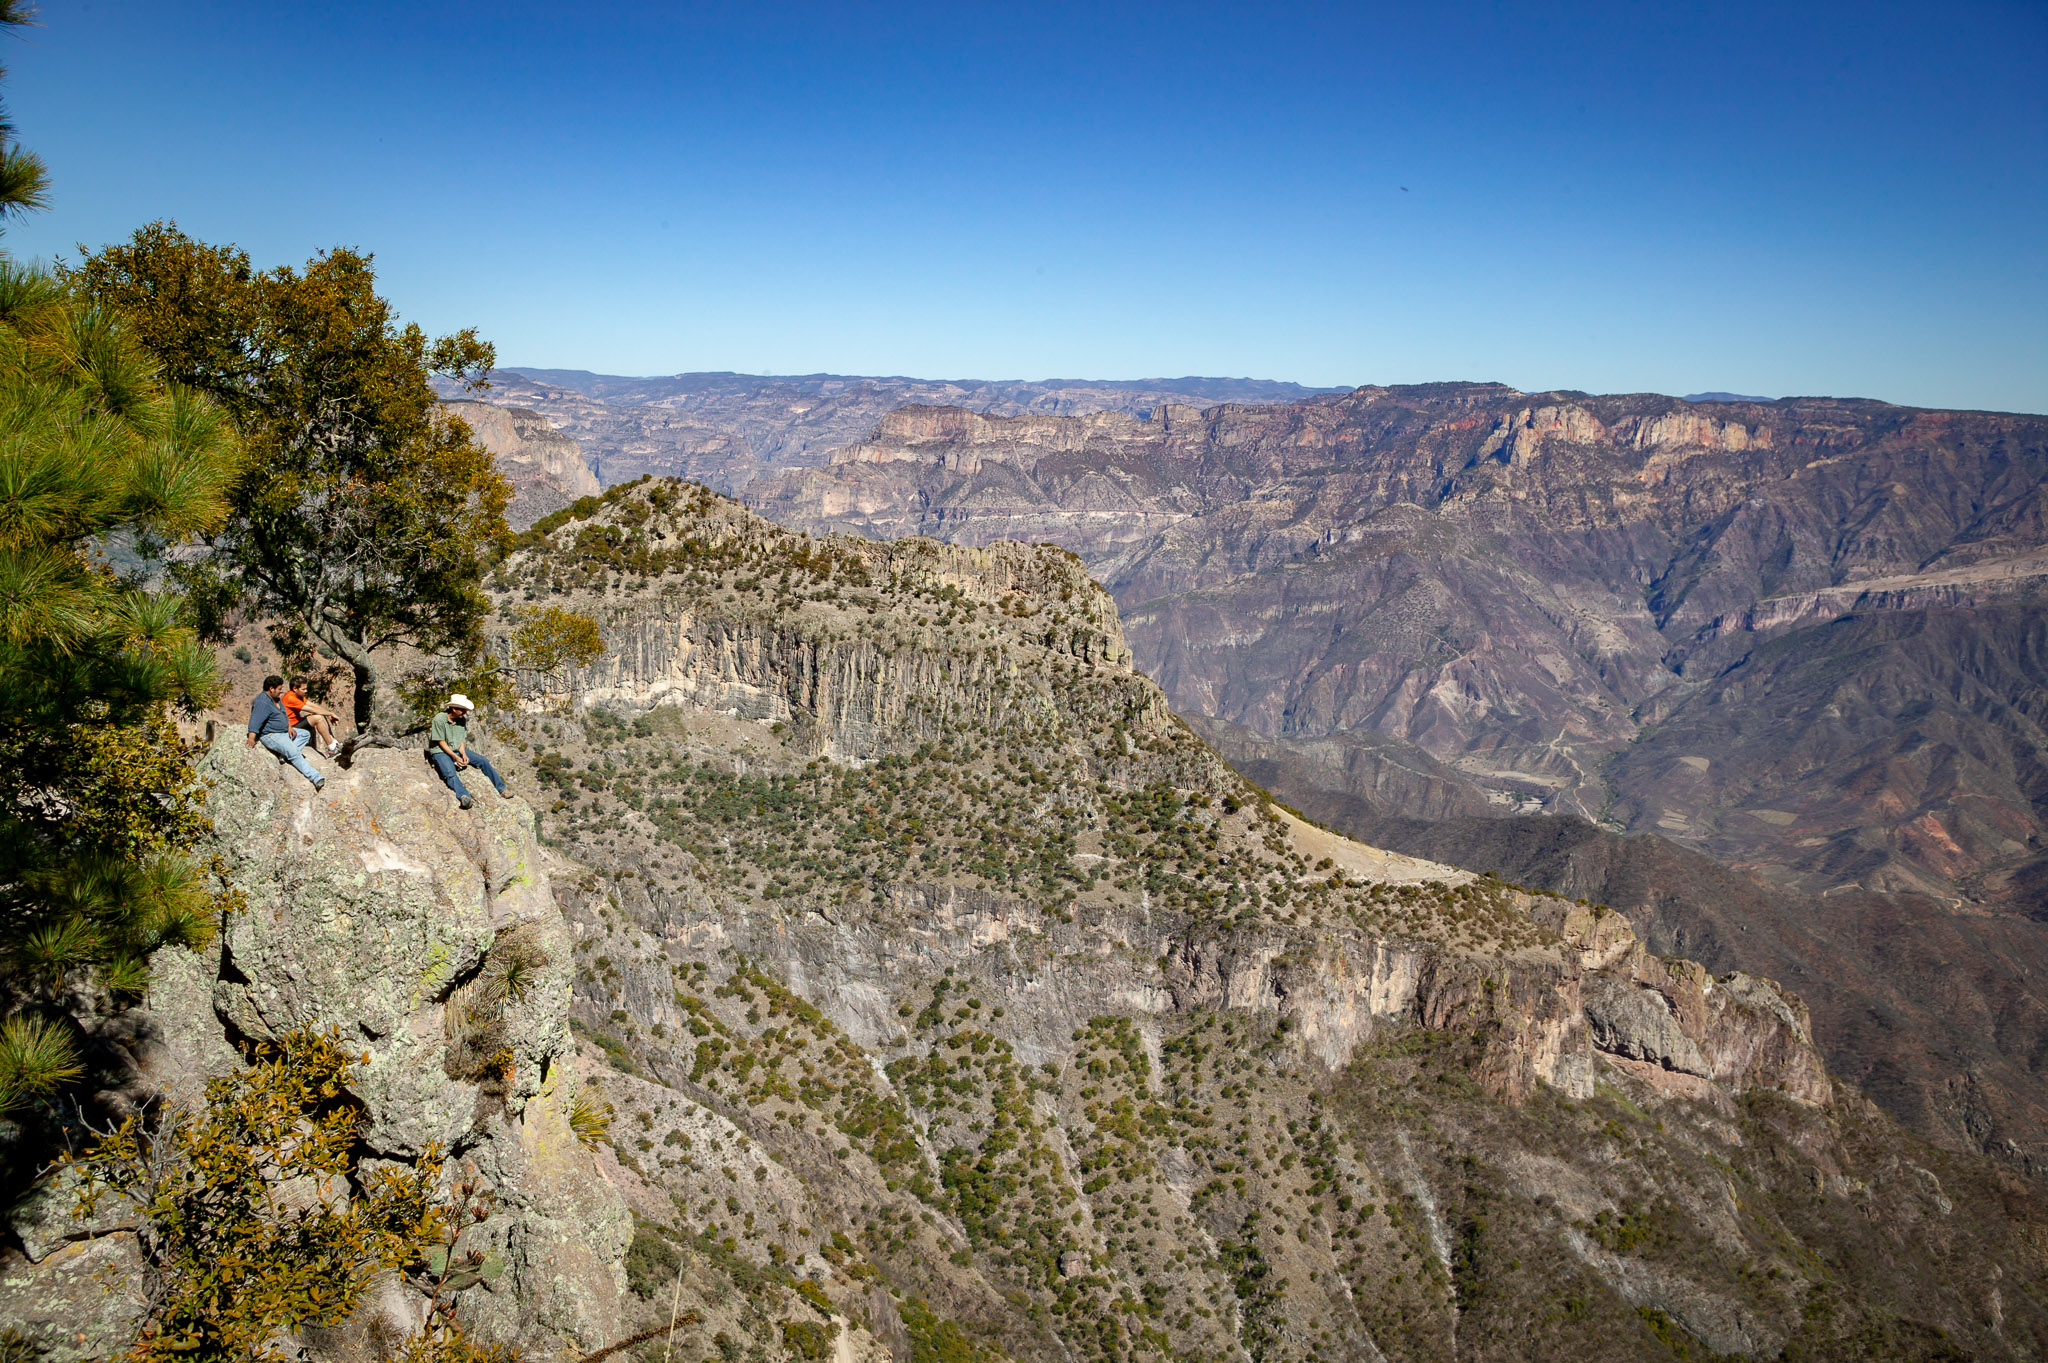 Copper Canyon views over Urique